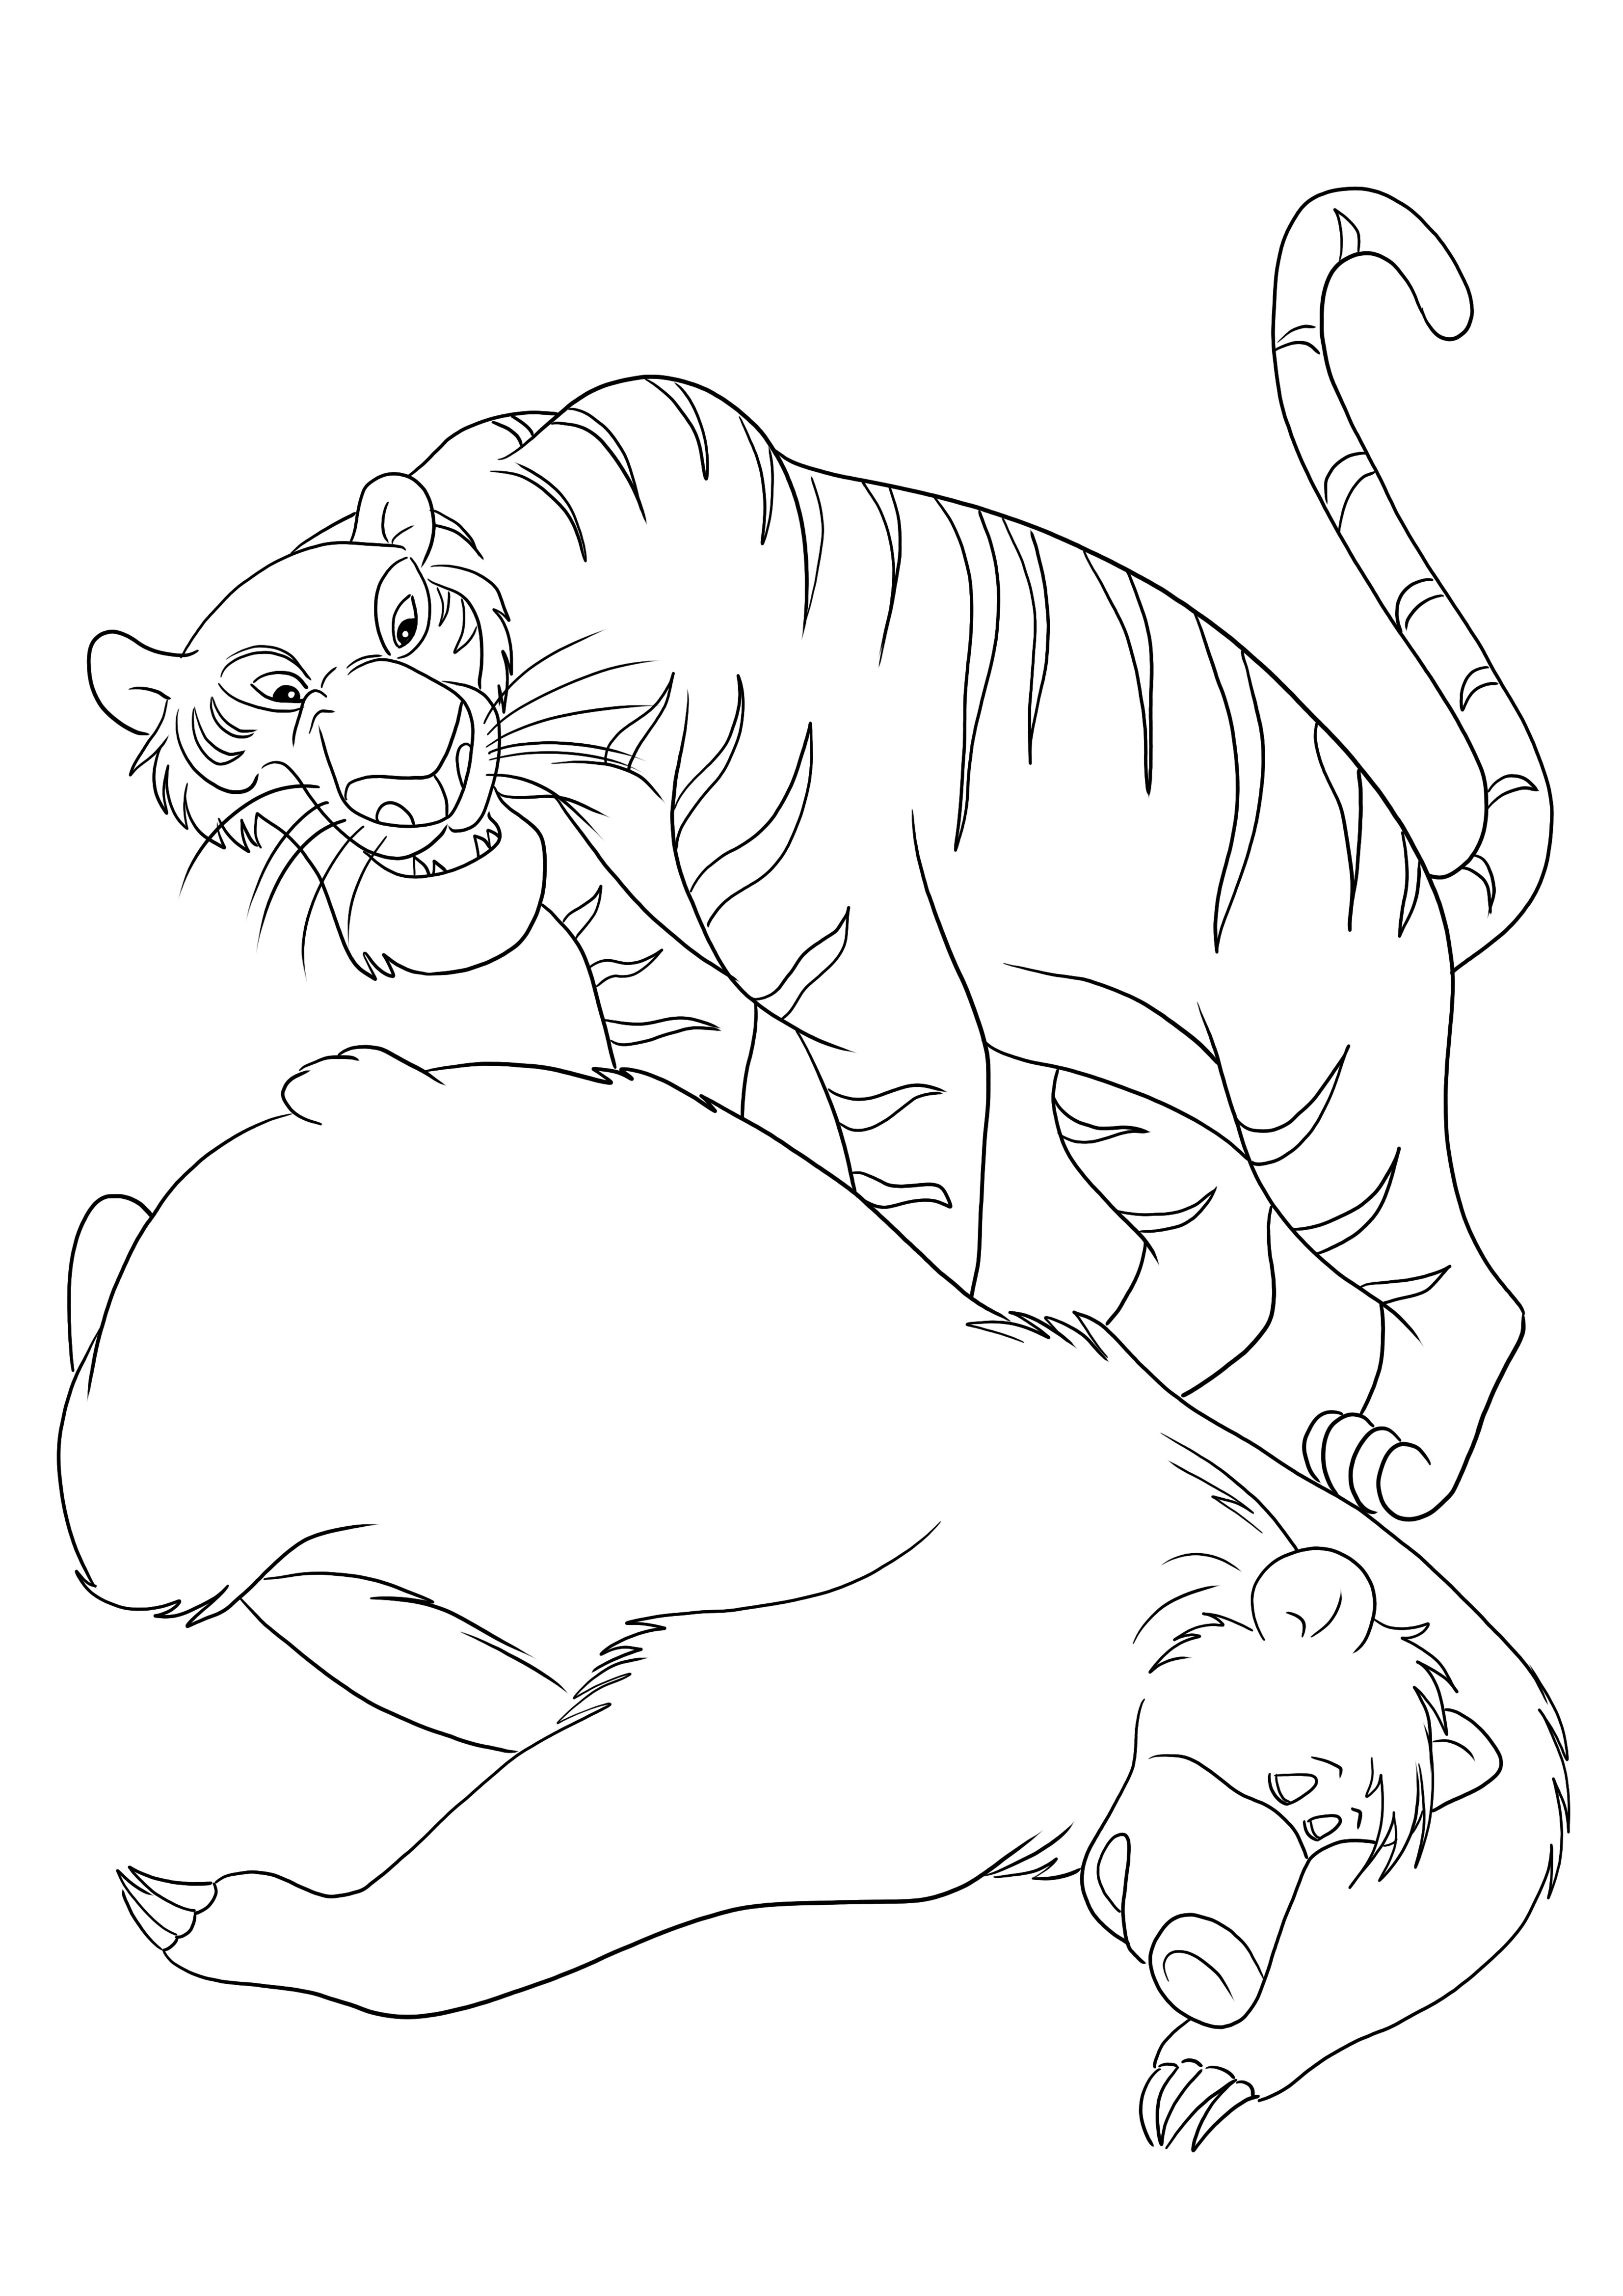 Shere Khan e Baloo - para imprimir ou baixar e colorir gratuitamente para crianças